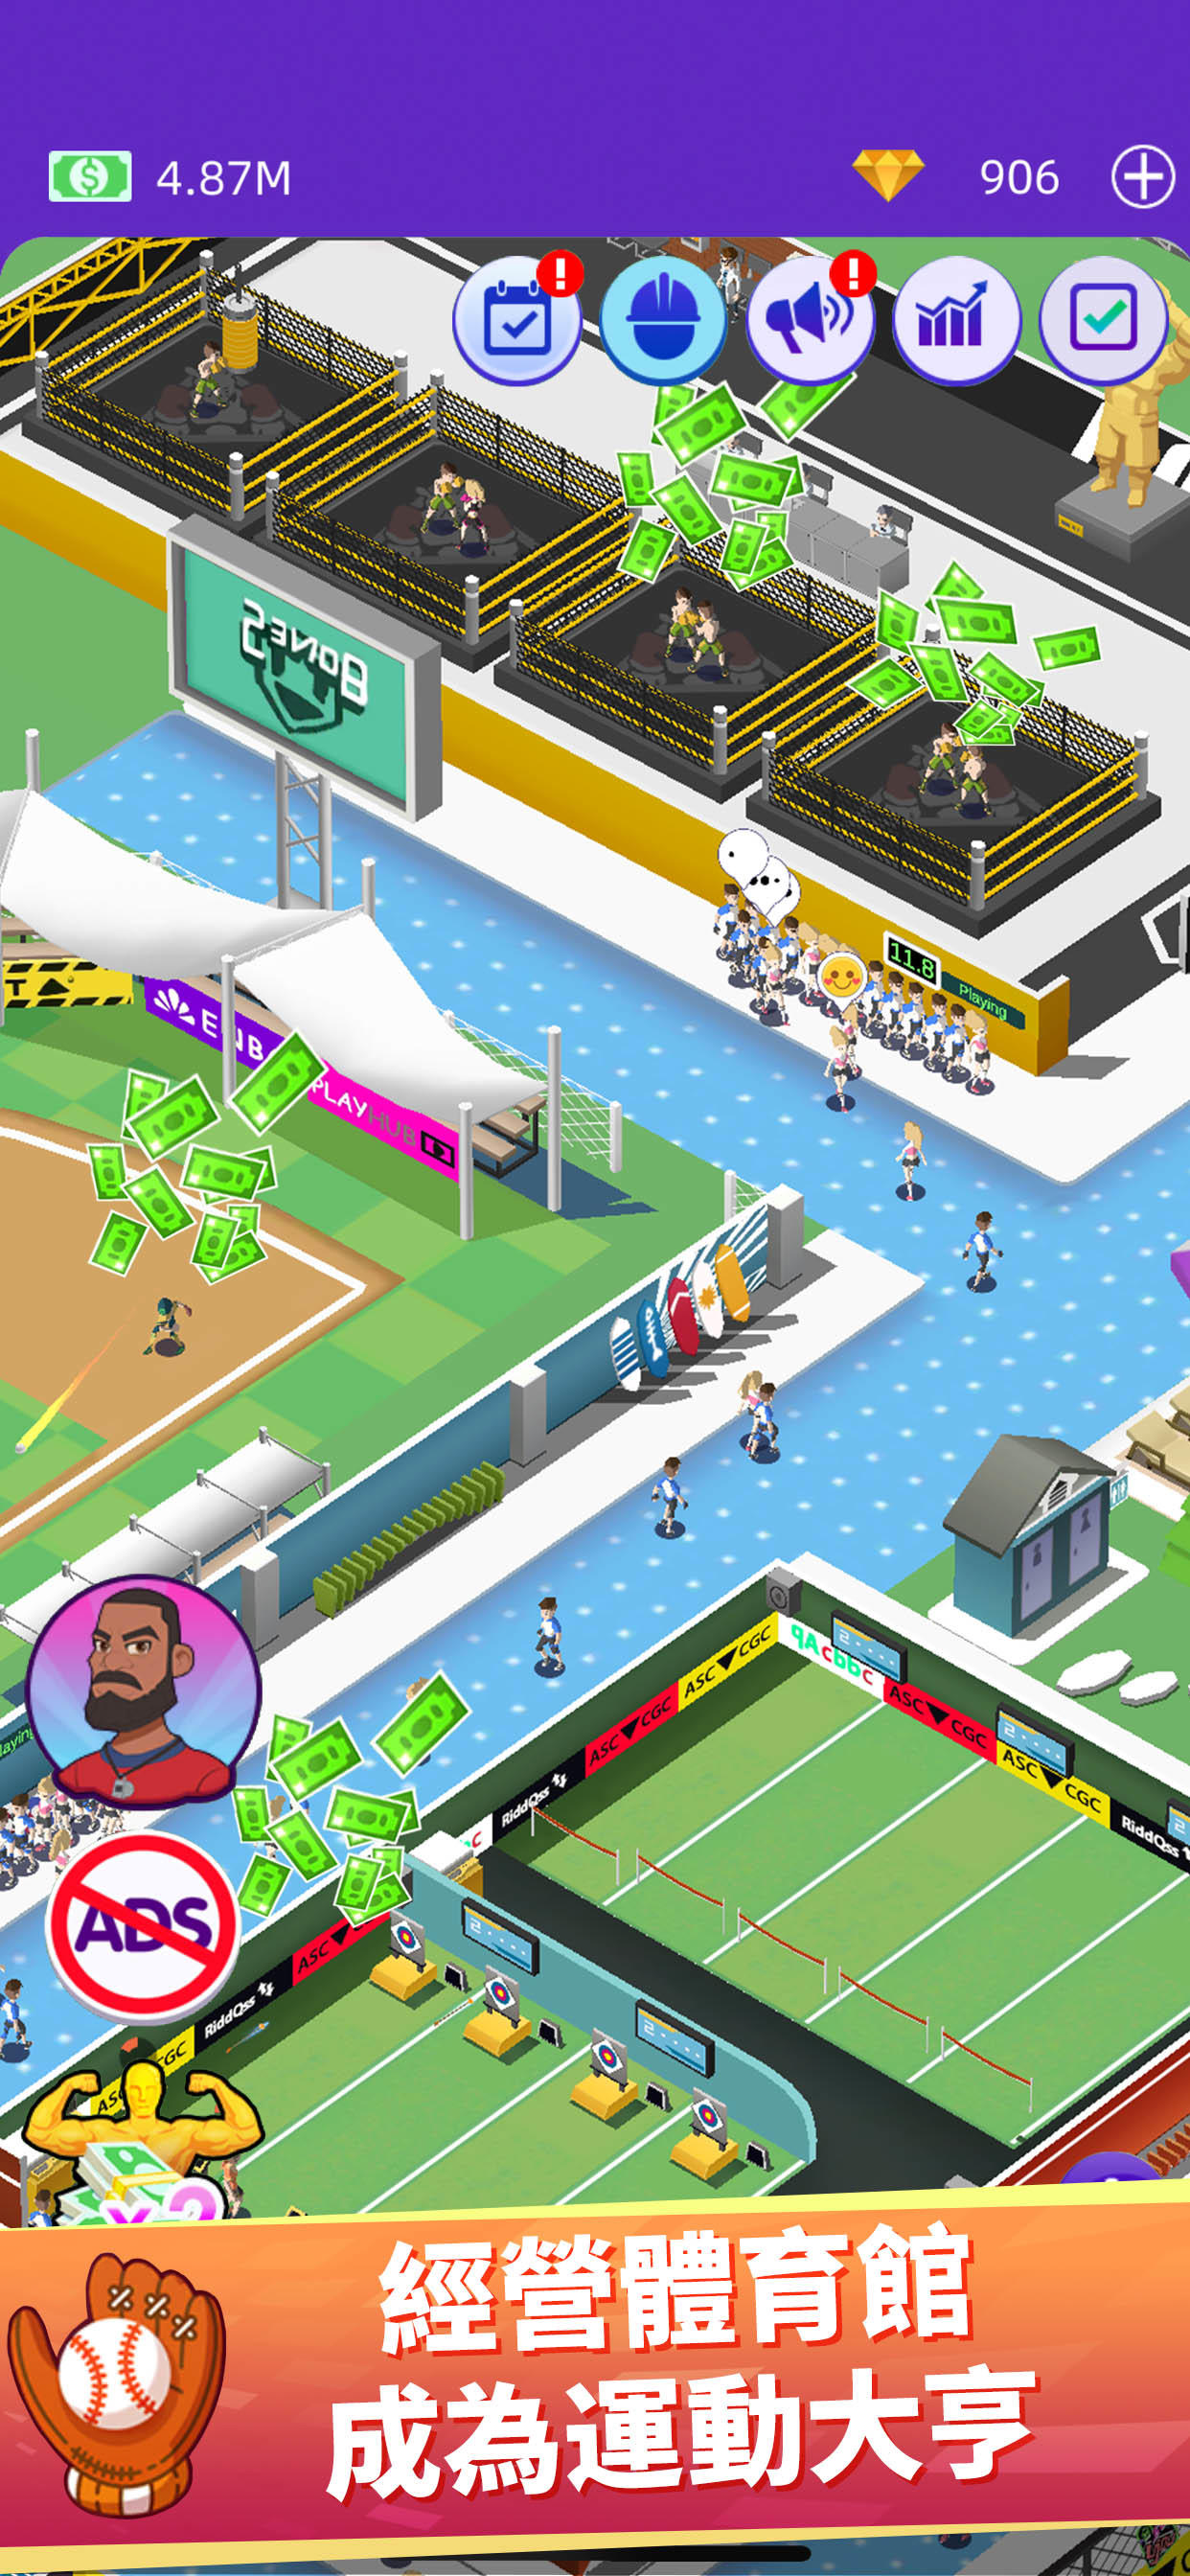 放置體育館 - 體育運動模擬遊戲遊戲截圖